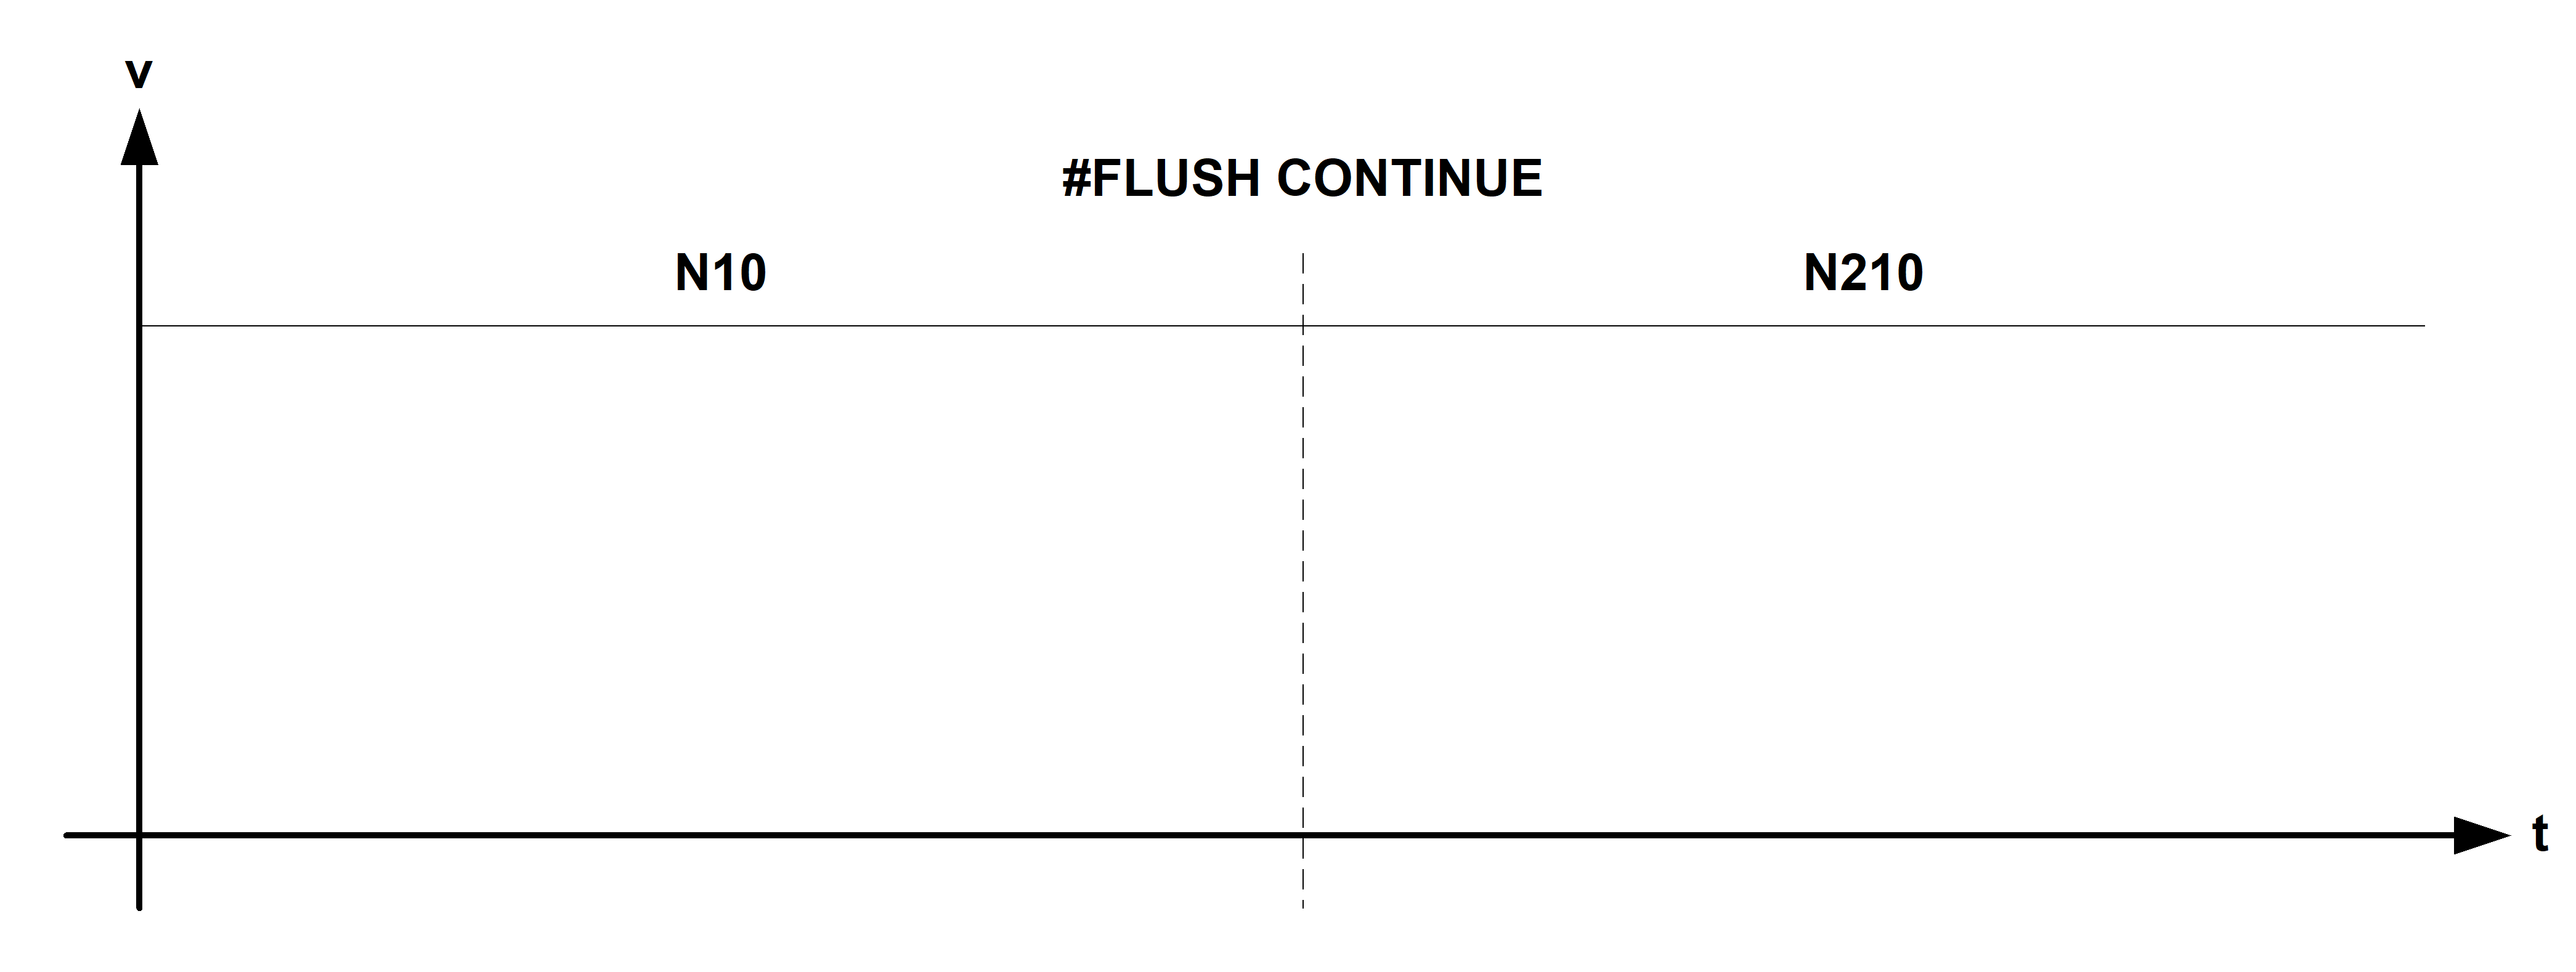 Wirkungsweise #FLUSH CONTINUE zwischen 2 Verfahrsätzen